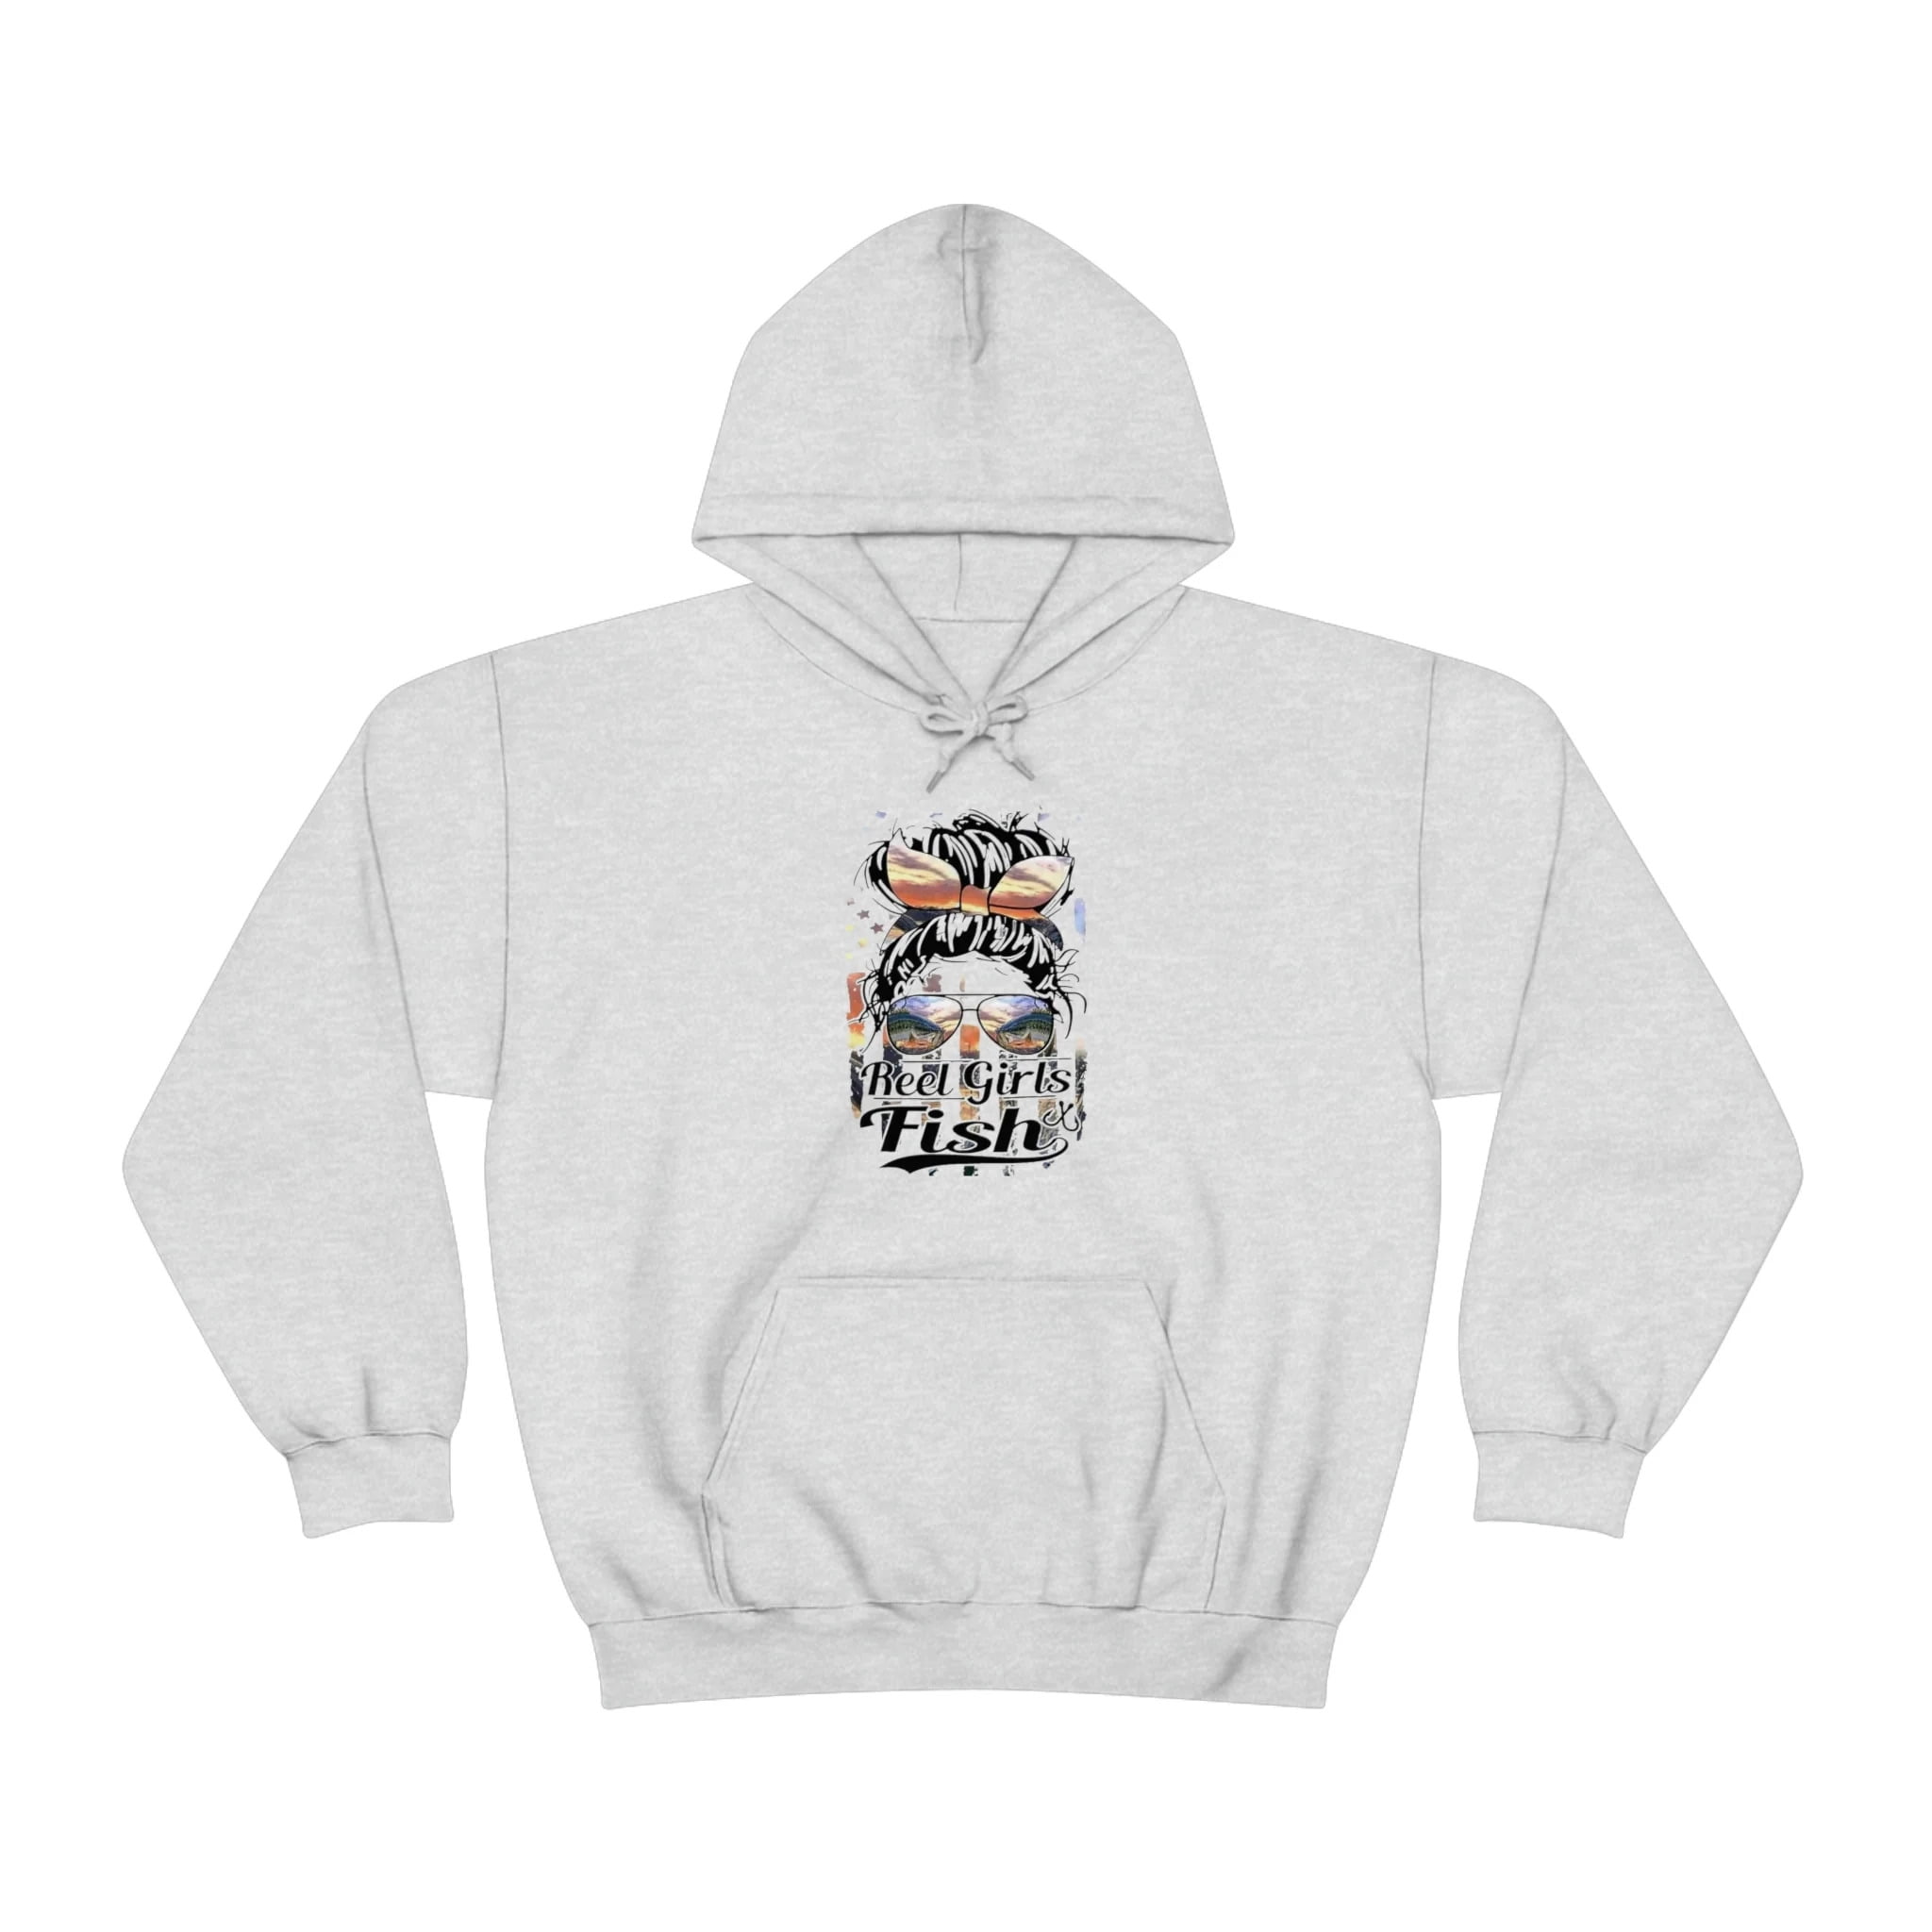 Reel Girls Fish Hoodie, Fishing hoodie, woman hoodie, country shirt Unisex  Heavy Blend™ Hooded Sweatshirt 